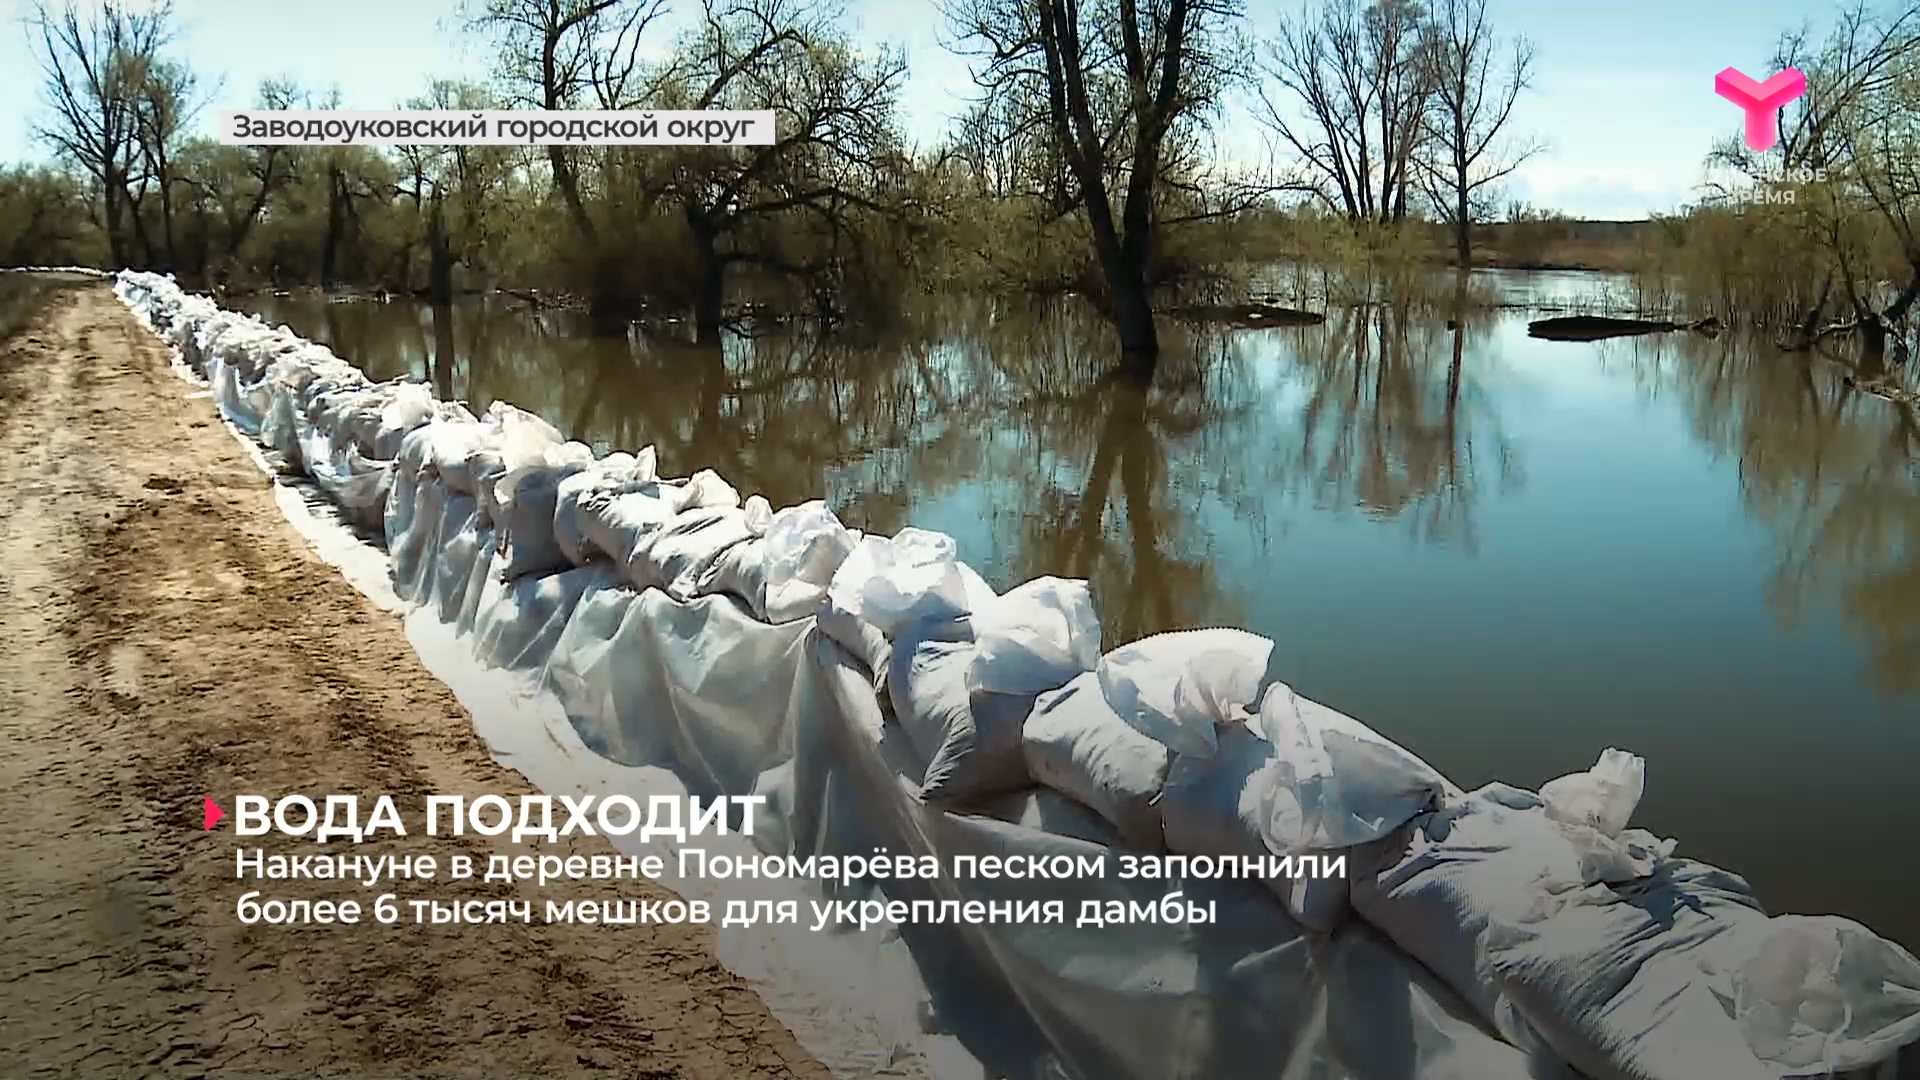 Накануне в деревне Пономарёва песком заполнили более 6 тысяч мешков для укрепления дамбы